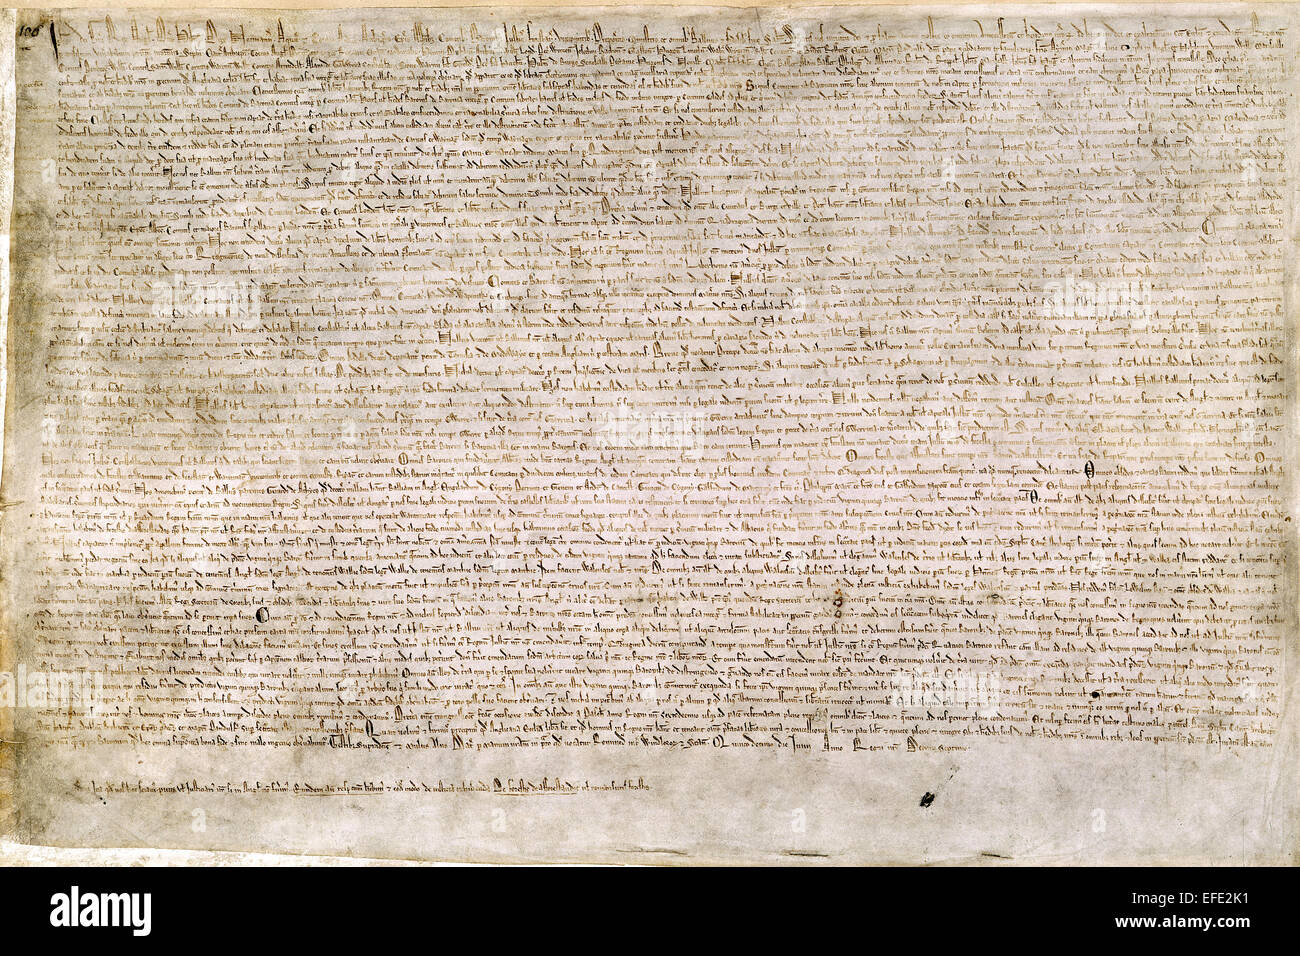 Carta Magna. Una de las cuatro copias sobrevivientes de la Carta Magna de 1215. Foto de stock